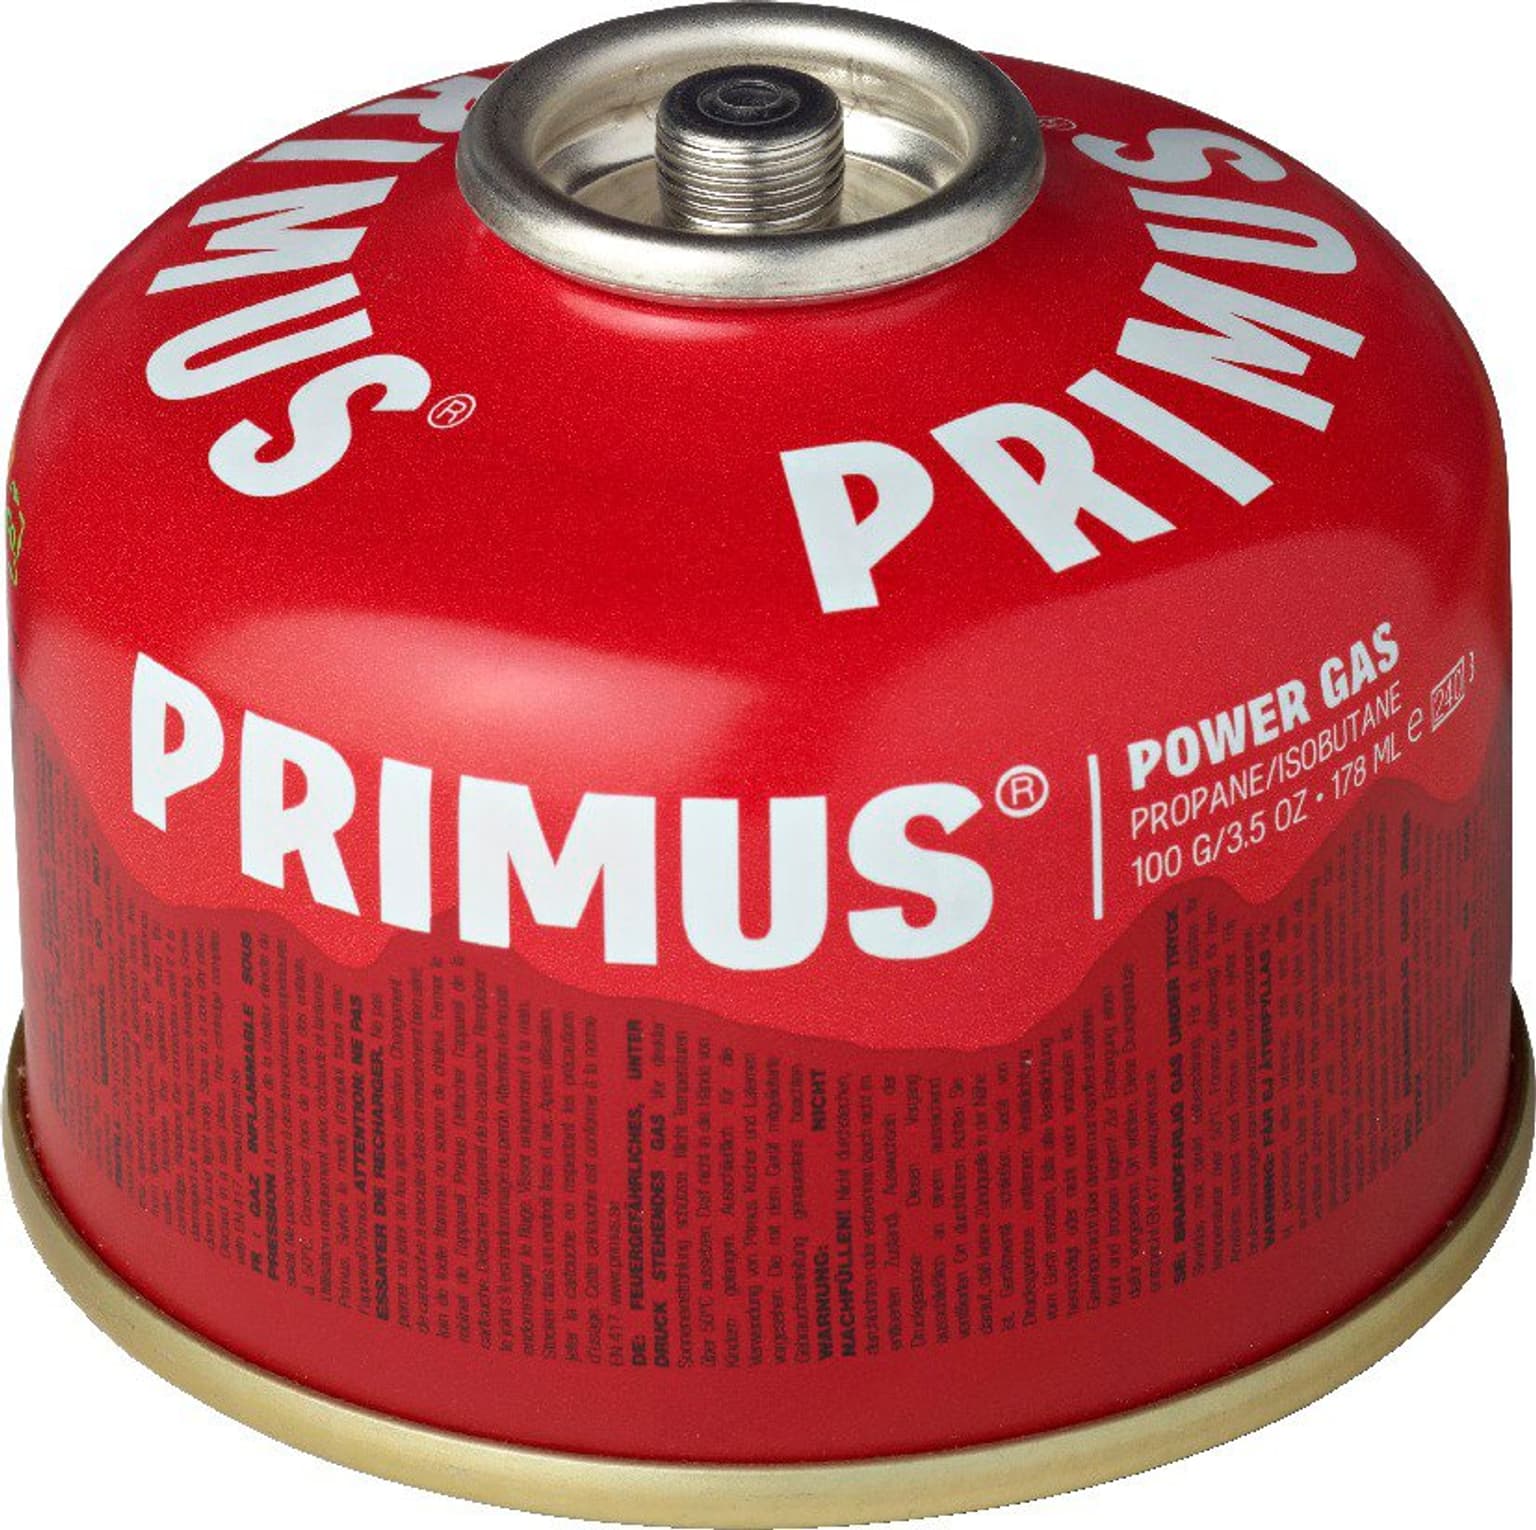 Primus Primus Kartusche 100 g Gaskartusche 2